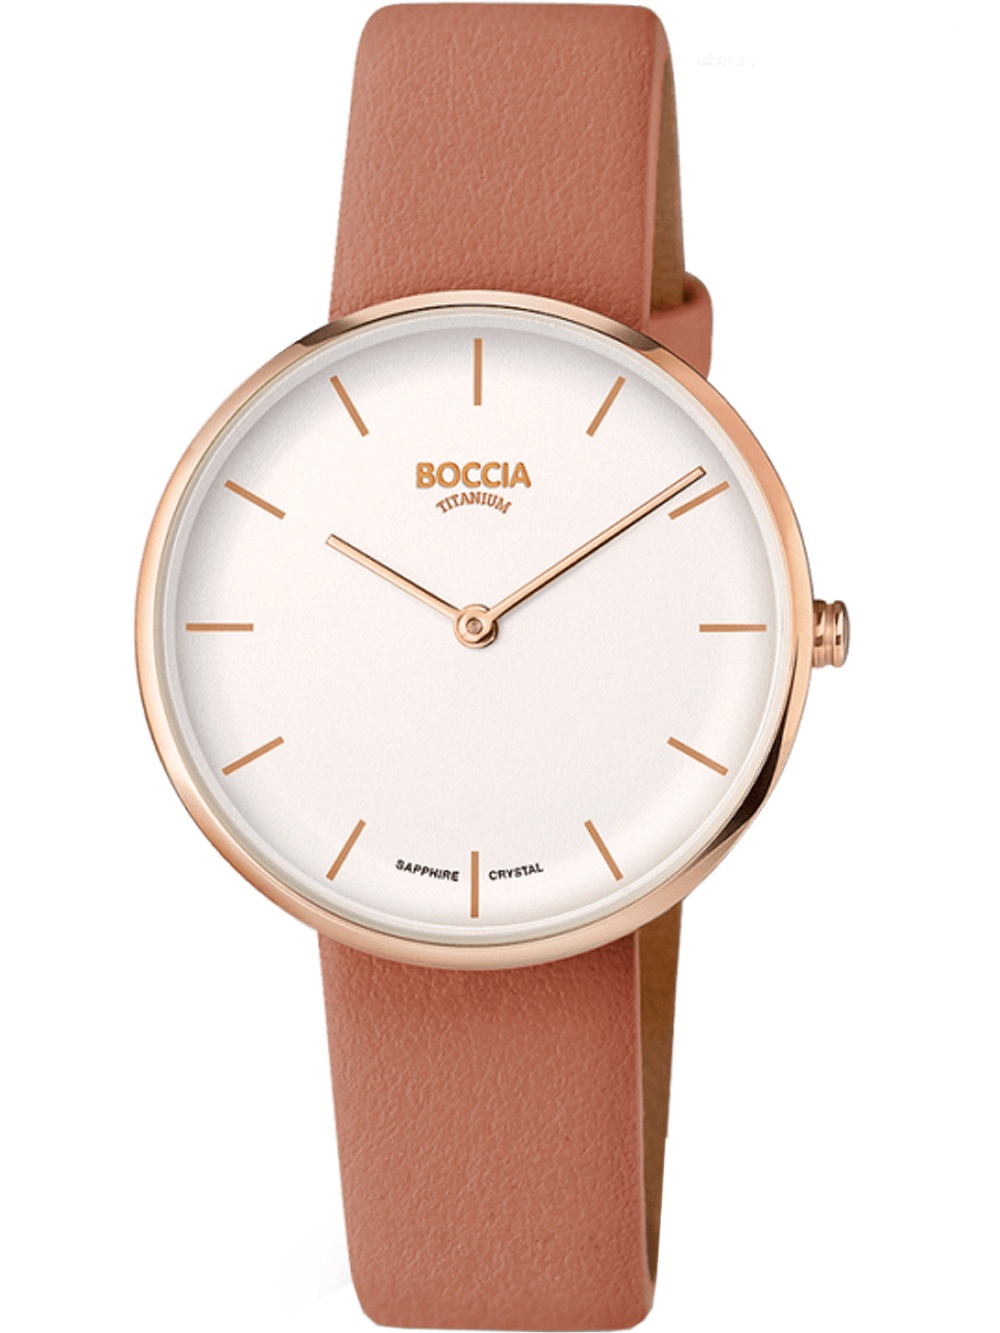 Dámské hodinky Boccia 3327-05 Ladies Watch Titanium 35mm 3ATM